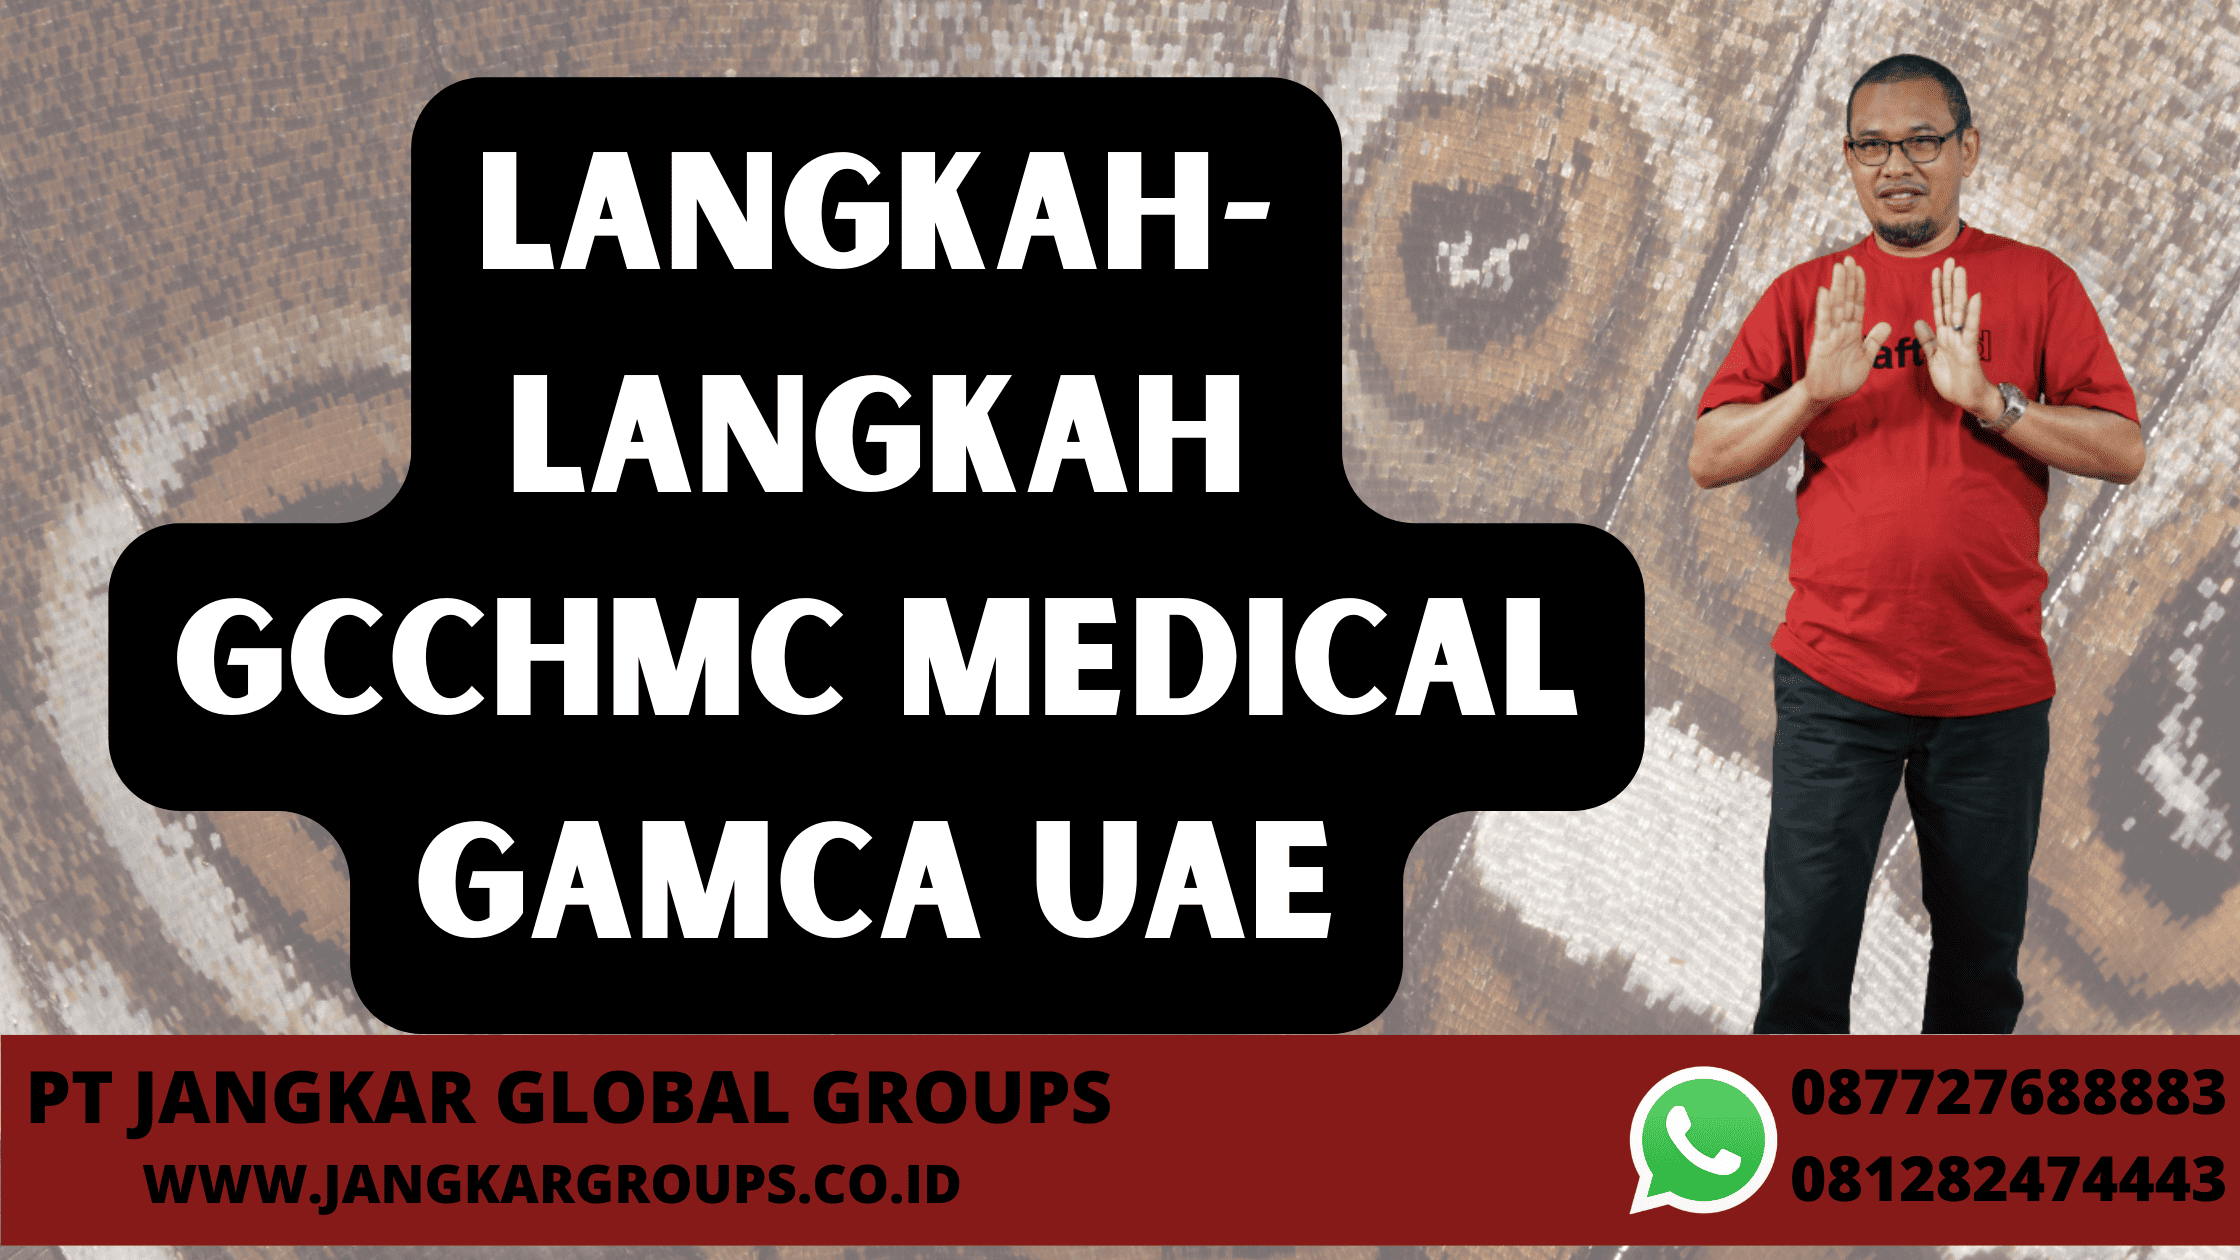 Langkah-langkah GCCHMC Medical Gamca UAE